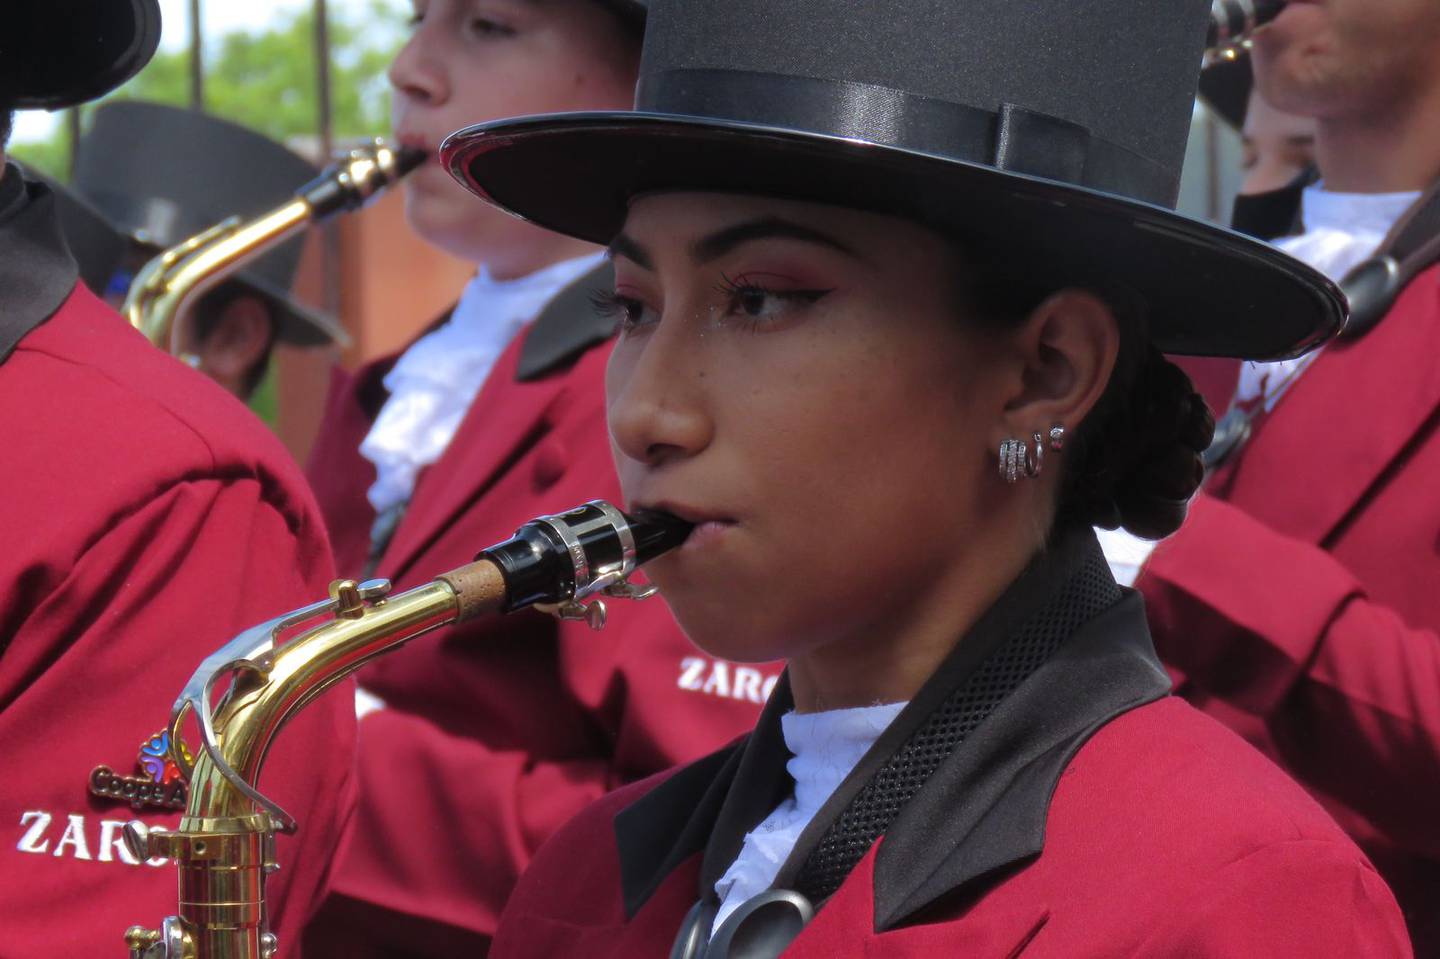 Sofía (19 años) e Indira (22 años) Leal Mora viven en barrio Panamá, en Santa Cruz de Guanacaste. Ambas están en la sección de vientos de la Banda de Zarcero, Sofía toca la flauta transversal e Indira el saxofón alto.